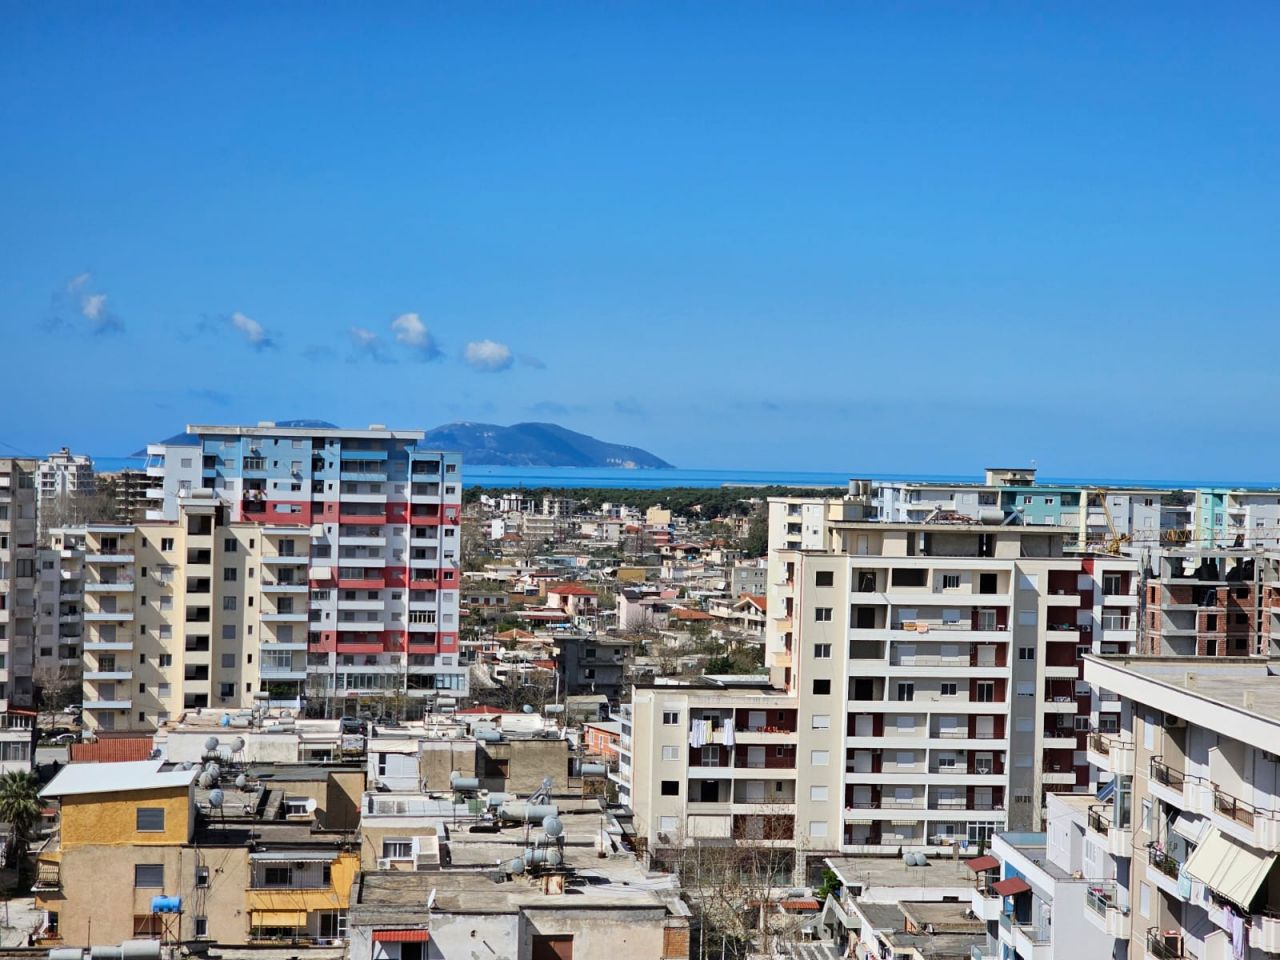 Penthouse Na Sprzedaż We Wlorze W Albanii